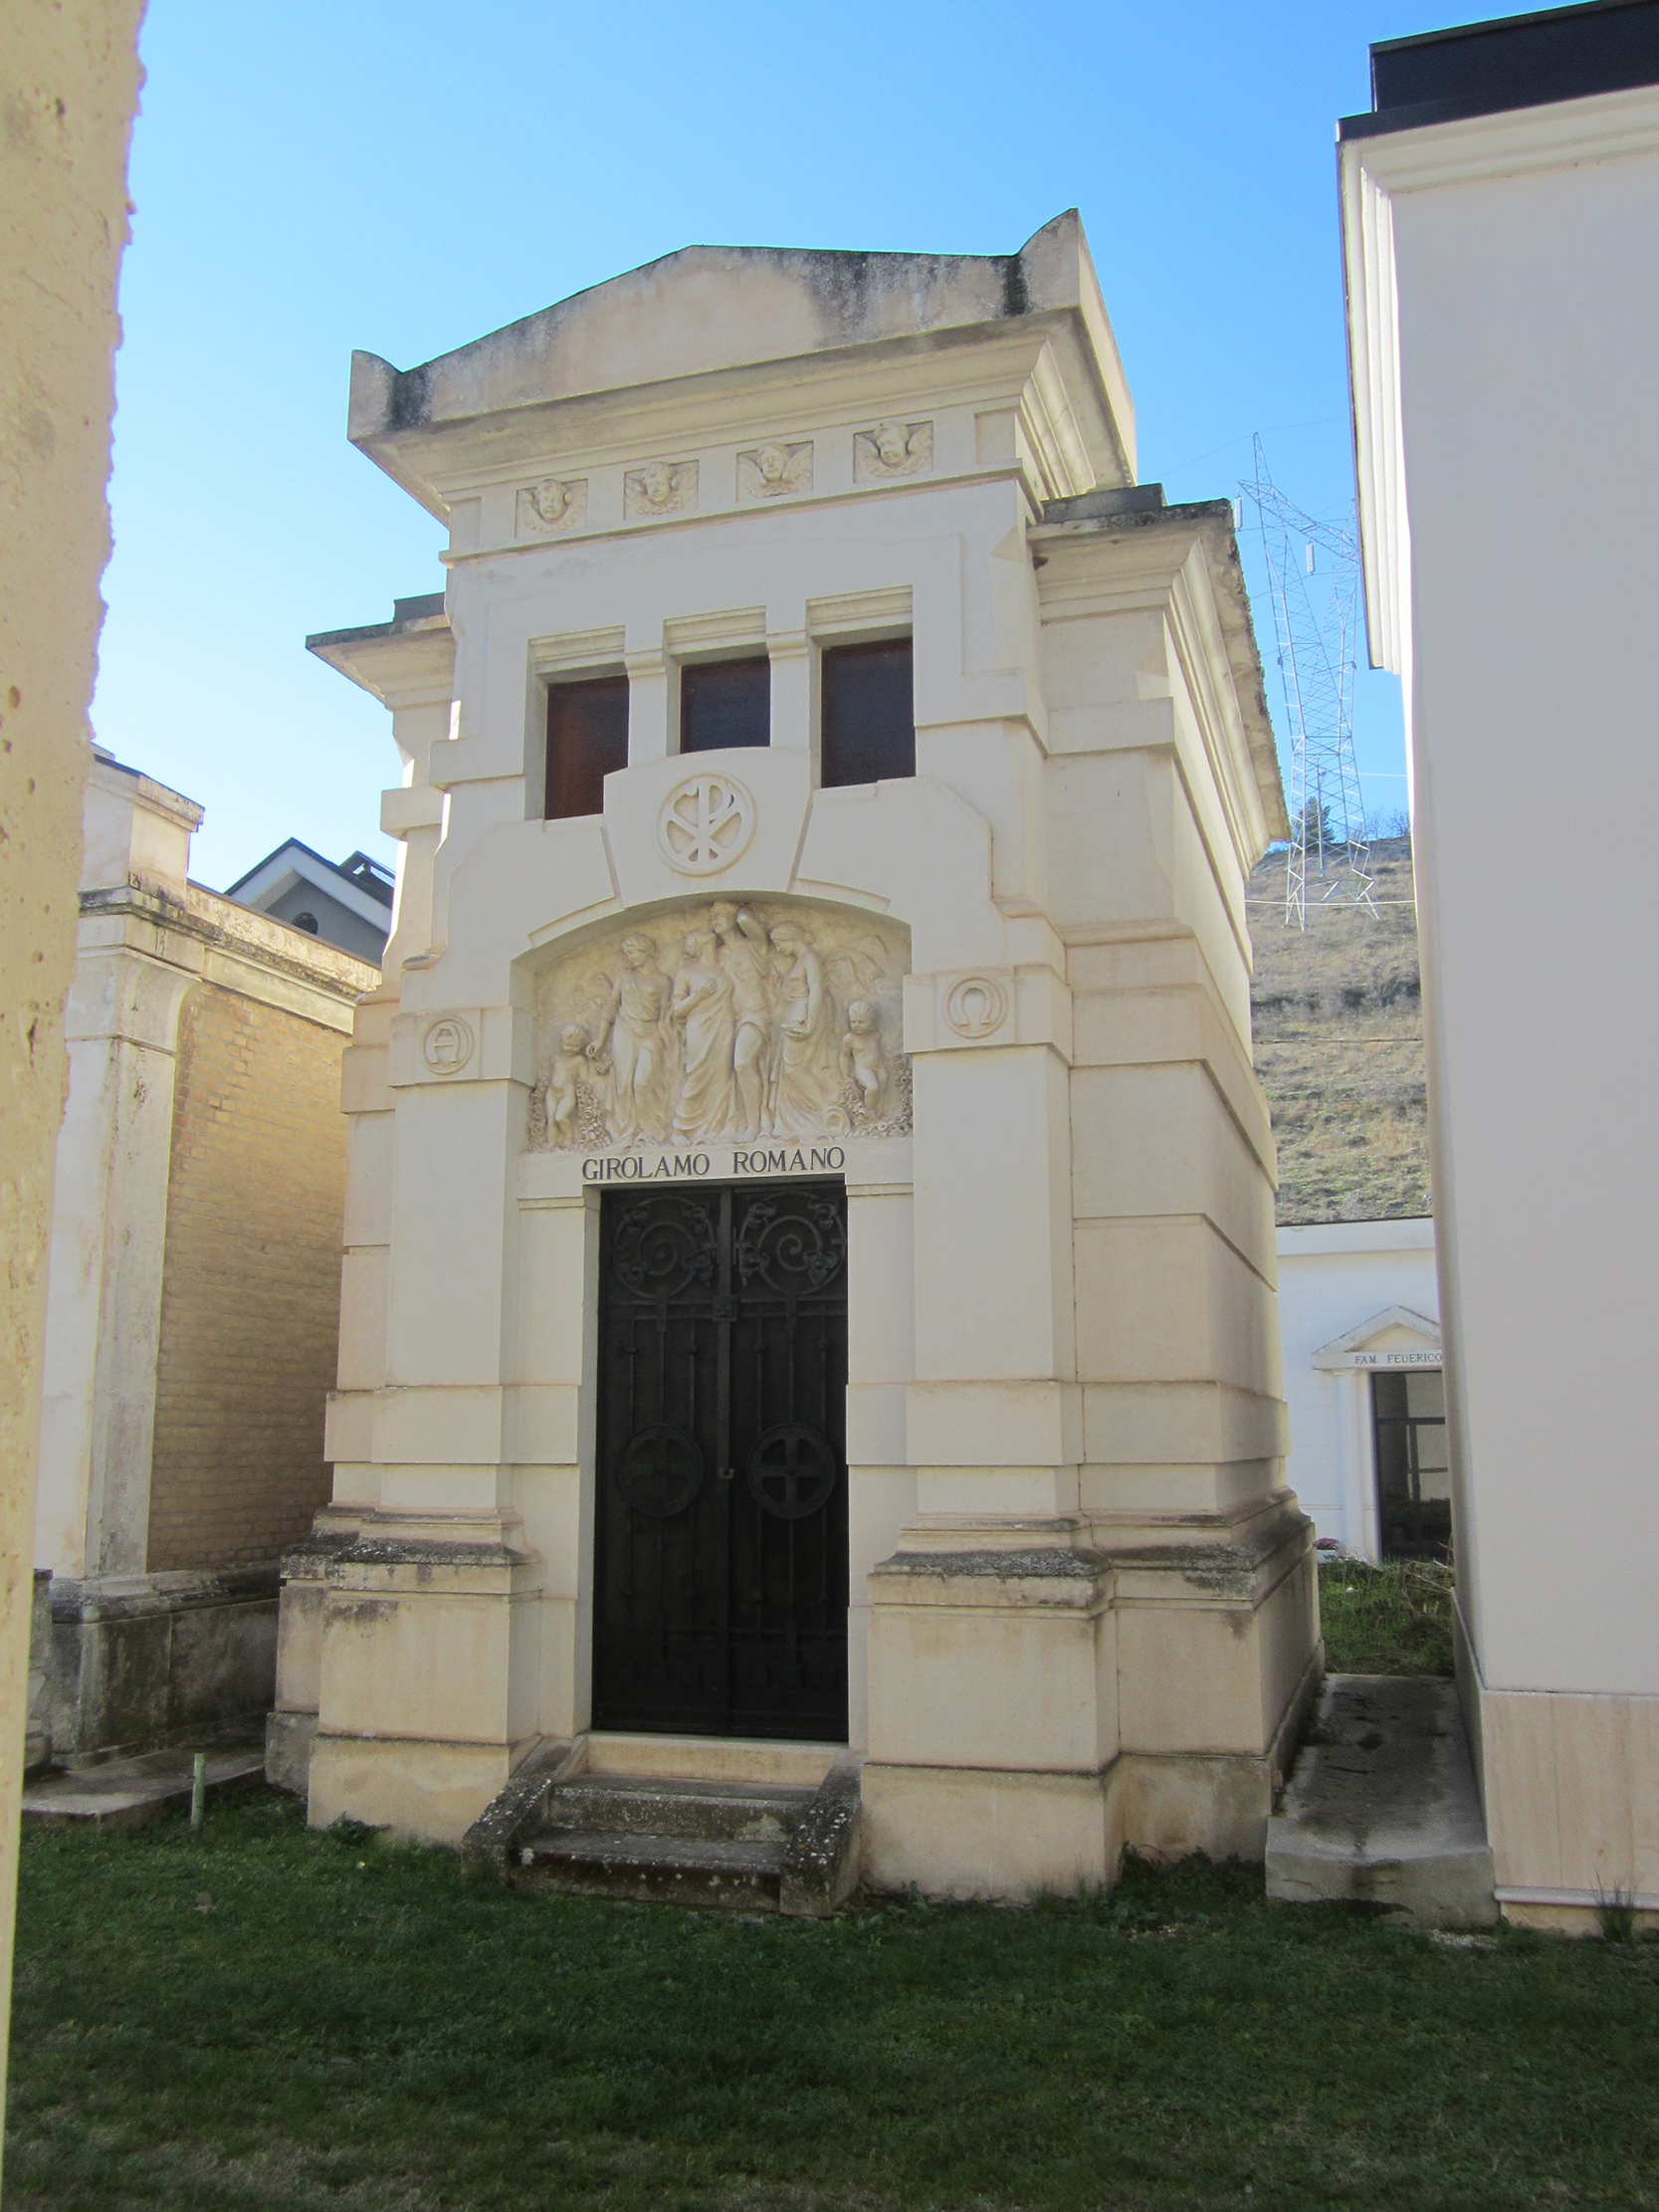 Cappella cimiteriale Girolamo Romano (cimitero, monumentale) - Sulmona (AQ) 